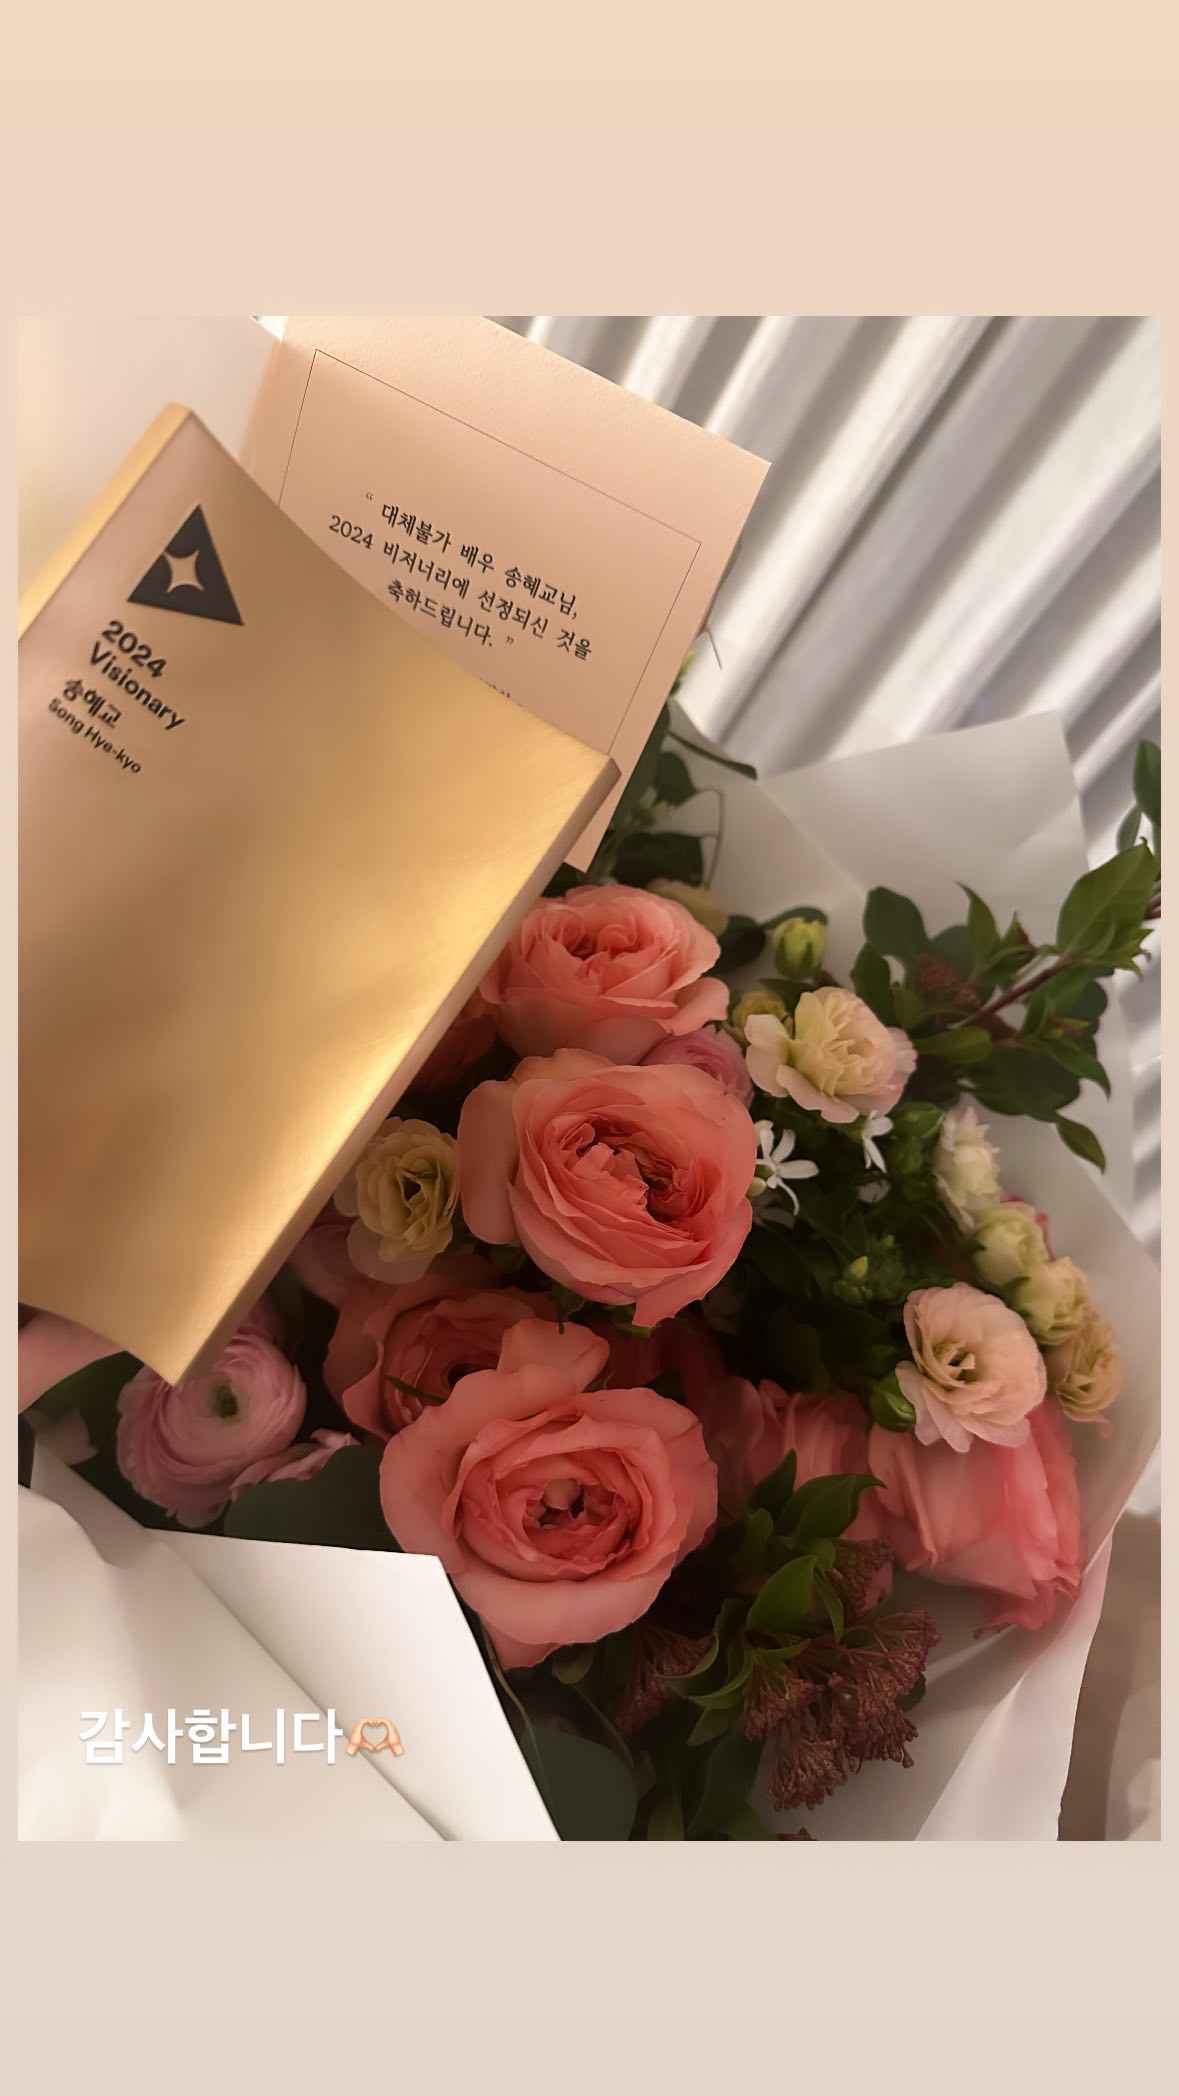 Song Hye Kyo khoe ảnh hoa hồng đúng ngày Valentine, netizen đồn đoán đã có tình yêu mới- Ảnh 2.